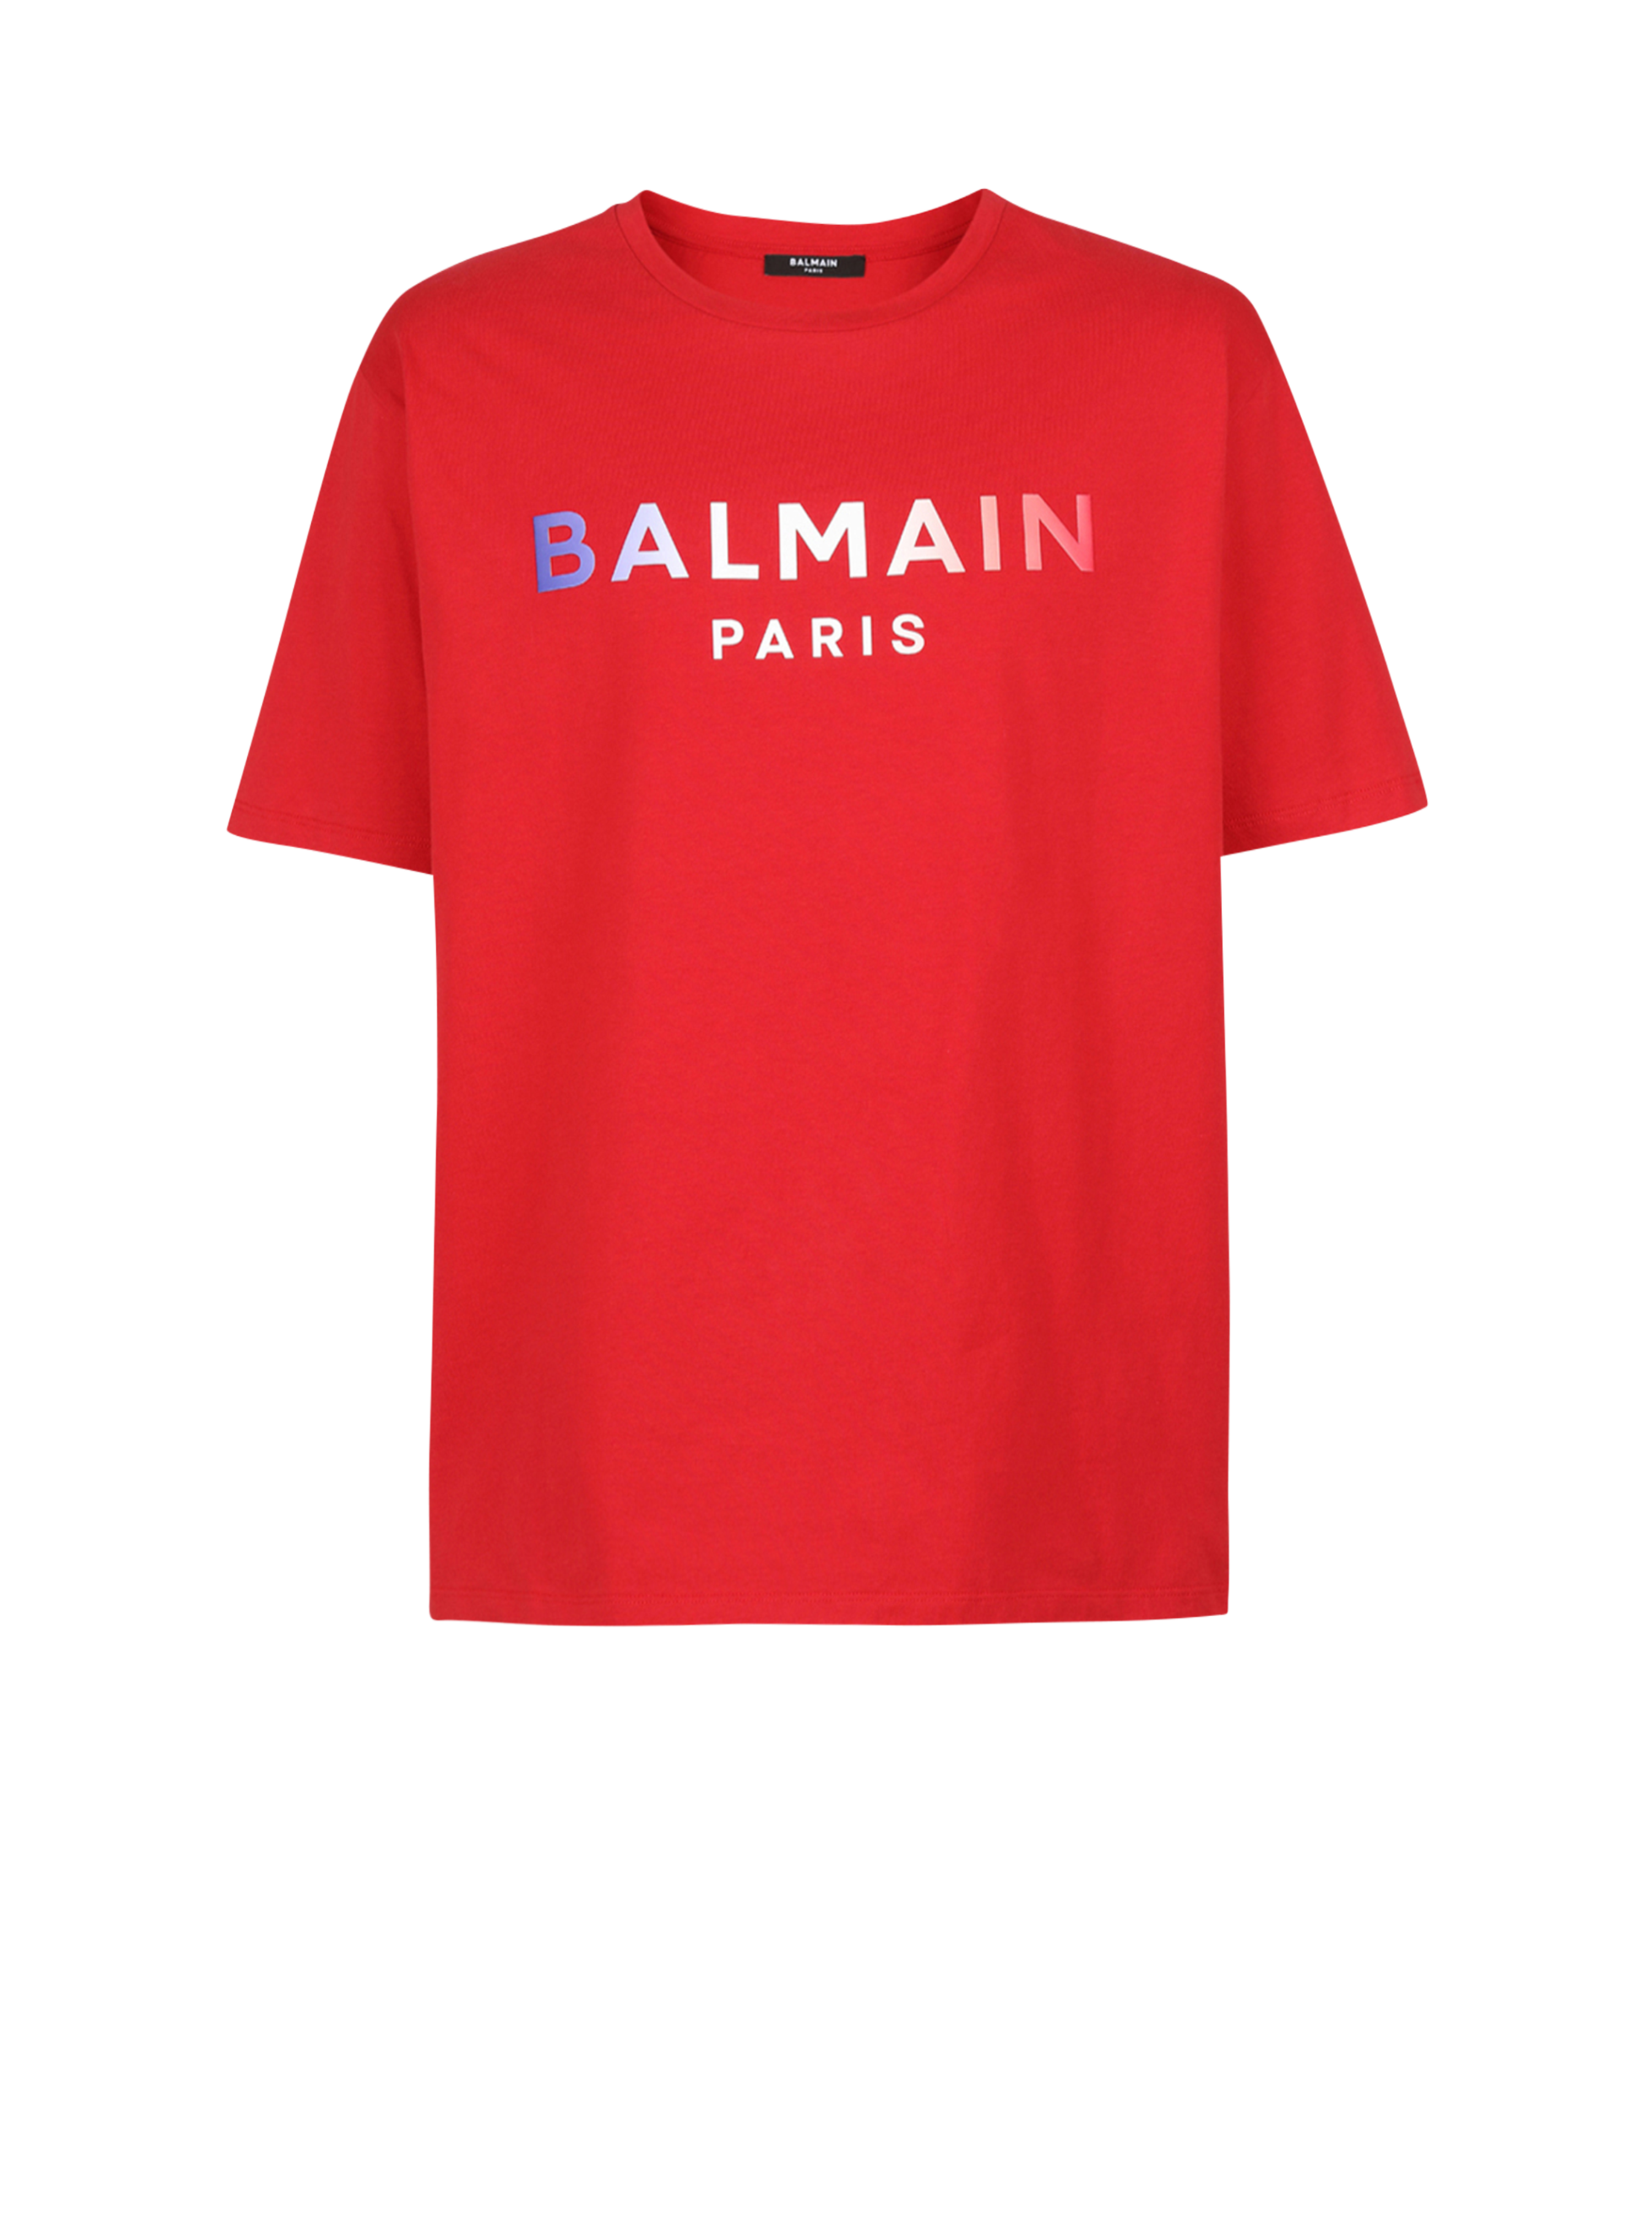 HIGH SUMMER CAPSULE - T-shirt en coton imprimé tie and dye logo Balmain Paris, rouge